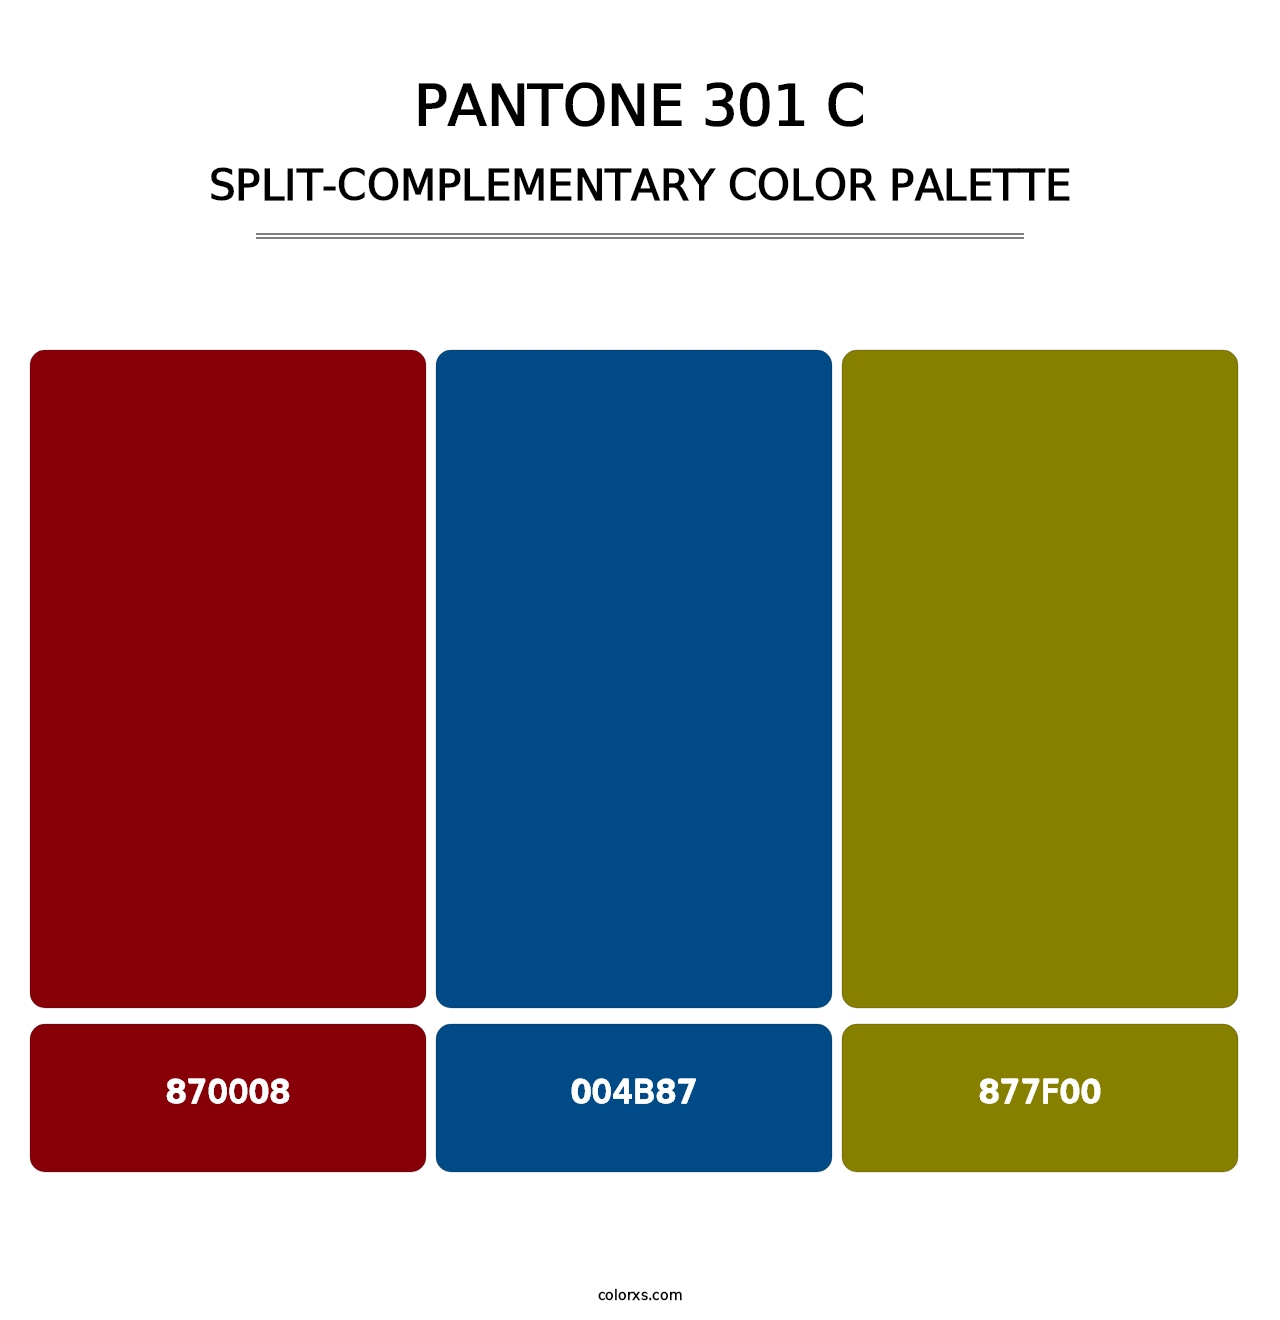 PANTONE 301 C - Split-Complementary Color Palette